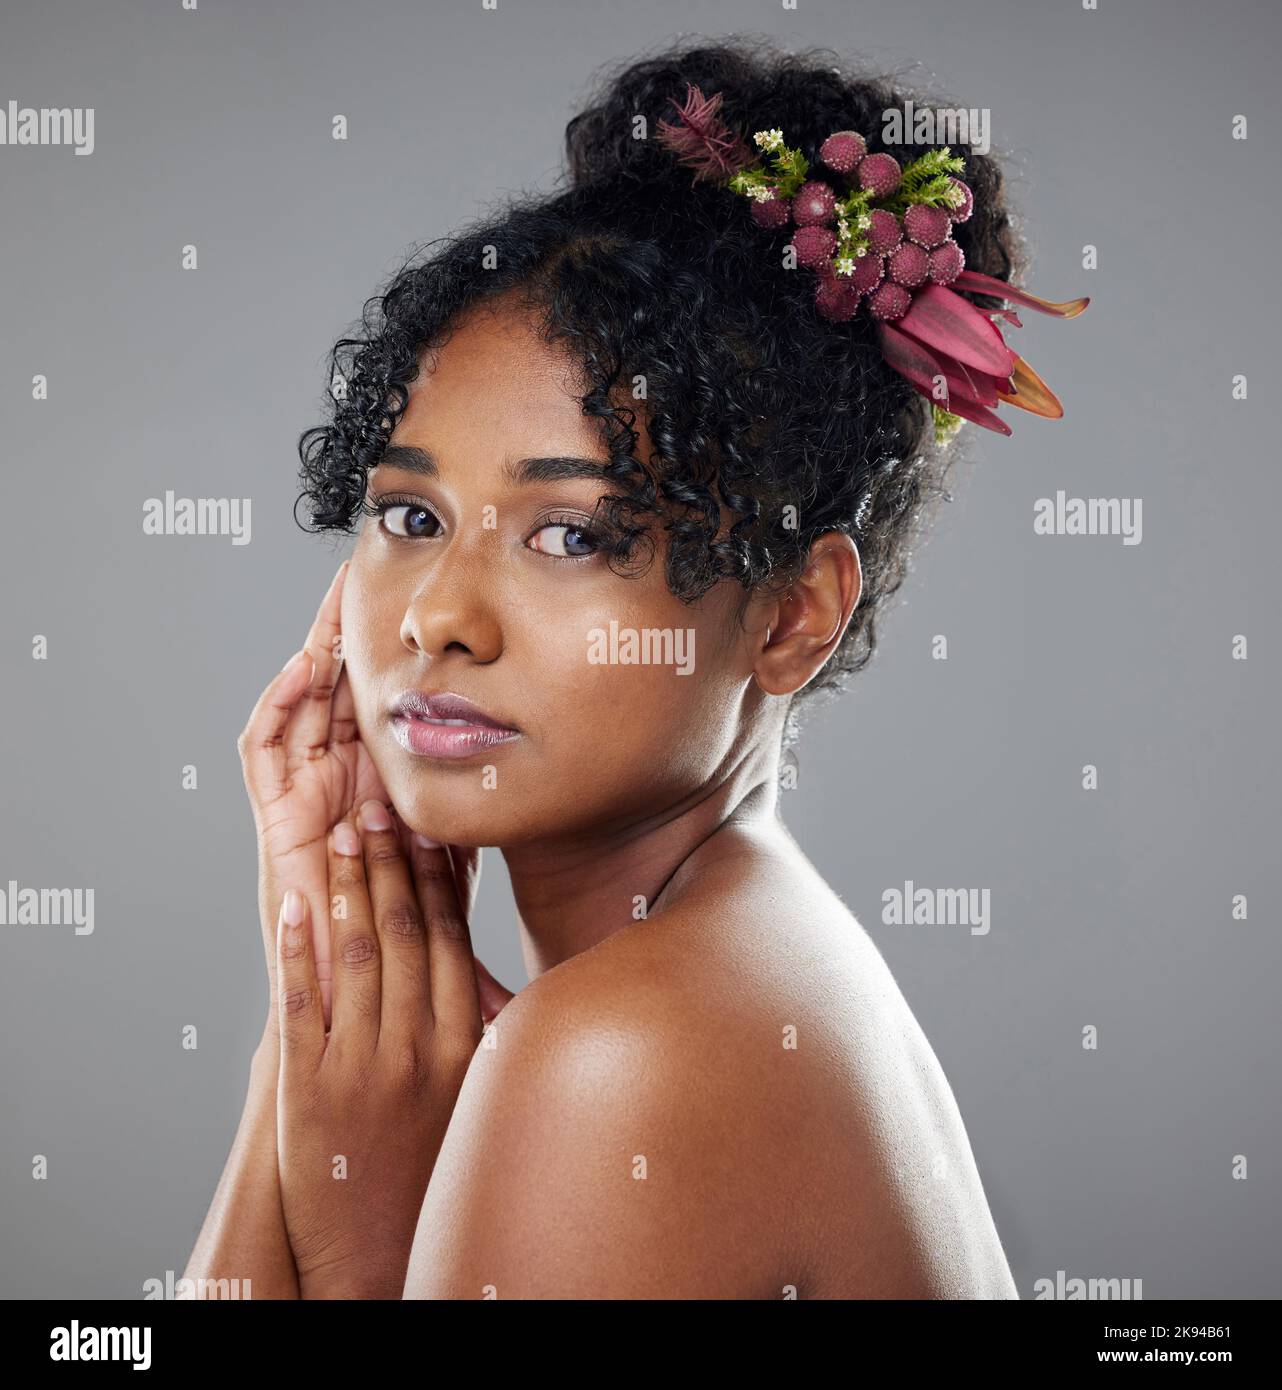 Femme noire, beauté et cheveux dans l'art de soin de la peau pour le maquillage, les cosmétiques ou le traitement contre un fond gris studio. Portrait d'une femme afro-américaine Banque D'Images